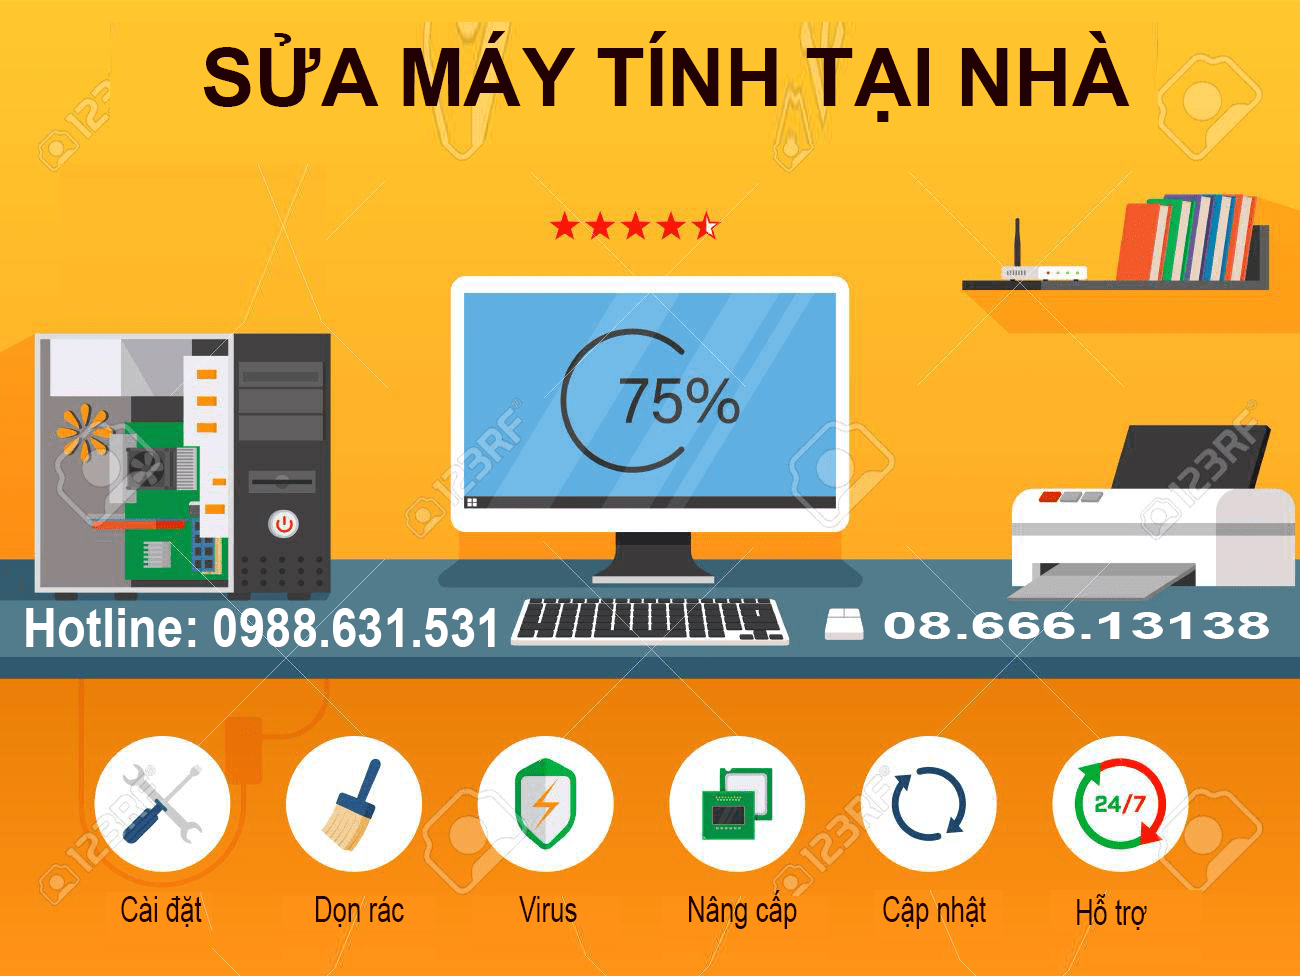 Sửa máy tính tại nhà Văn Phú gọi 0988.631.531 có mặt sau 30p